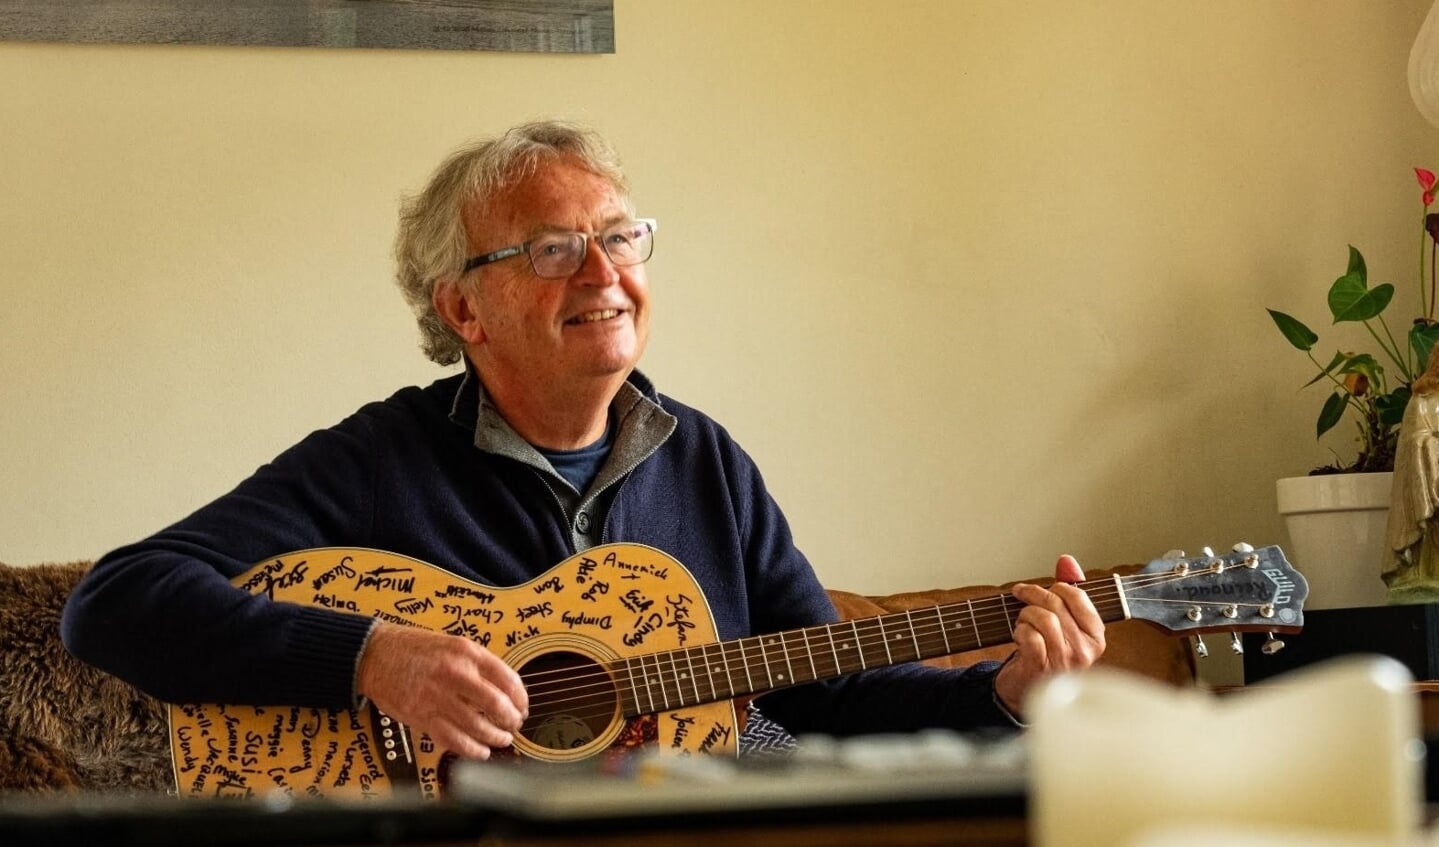 Jacques Marsmans greep de coronacrisis aan om een oude hobby op te pakken: muziek opnemen. 